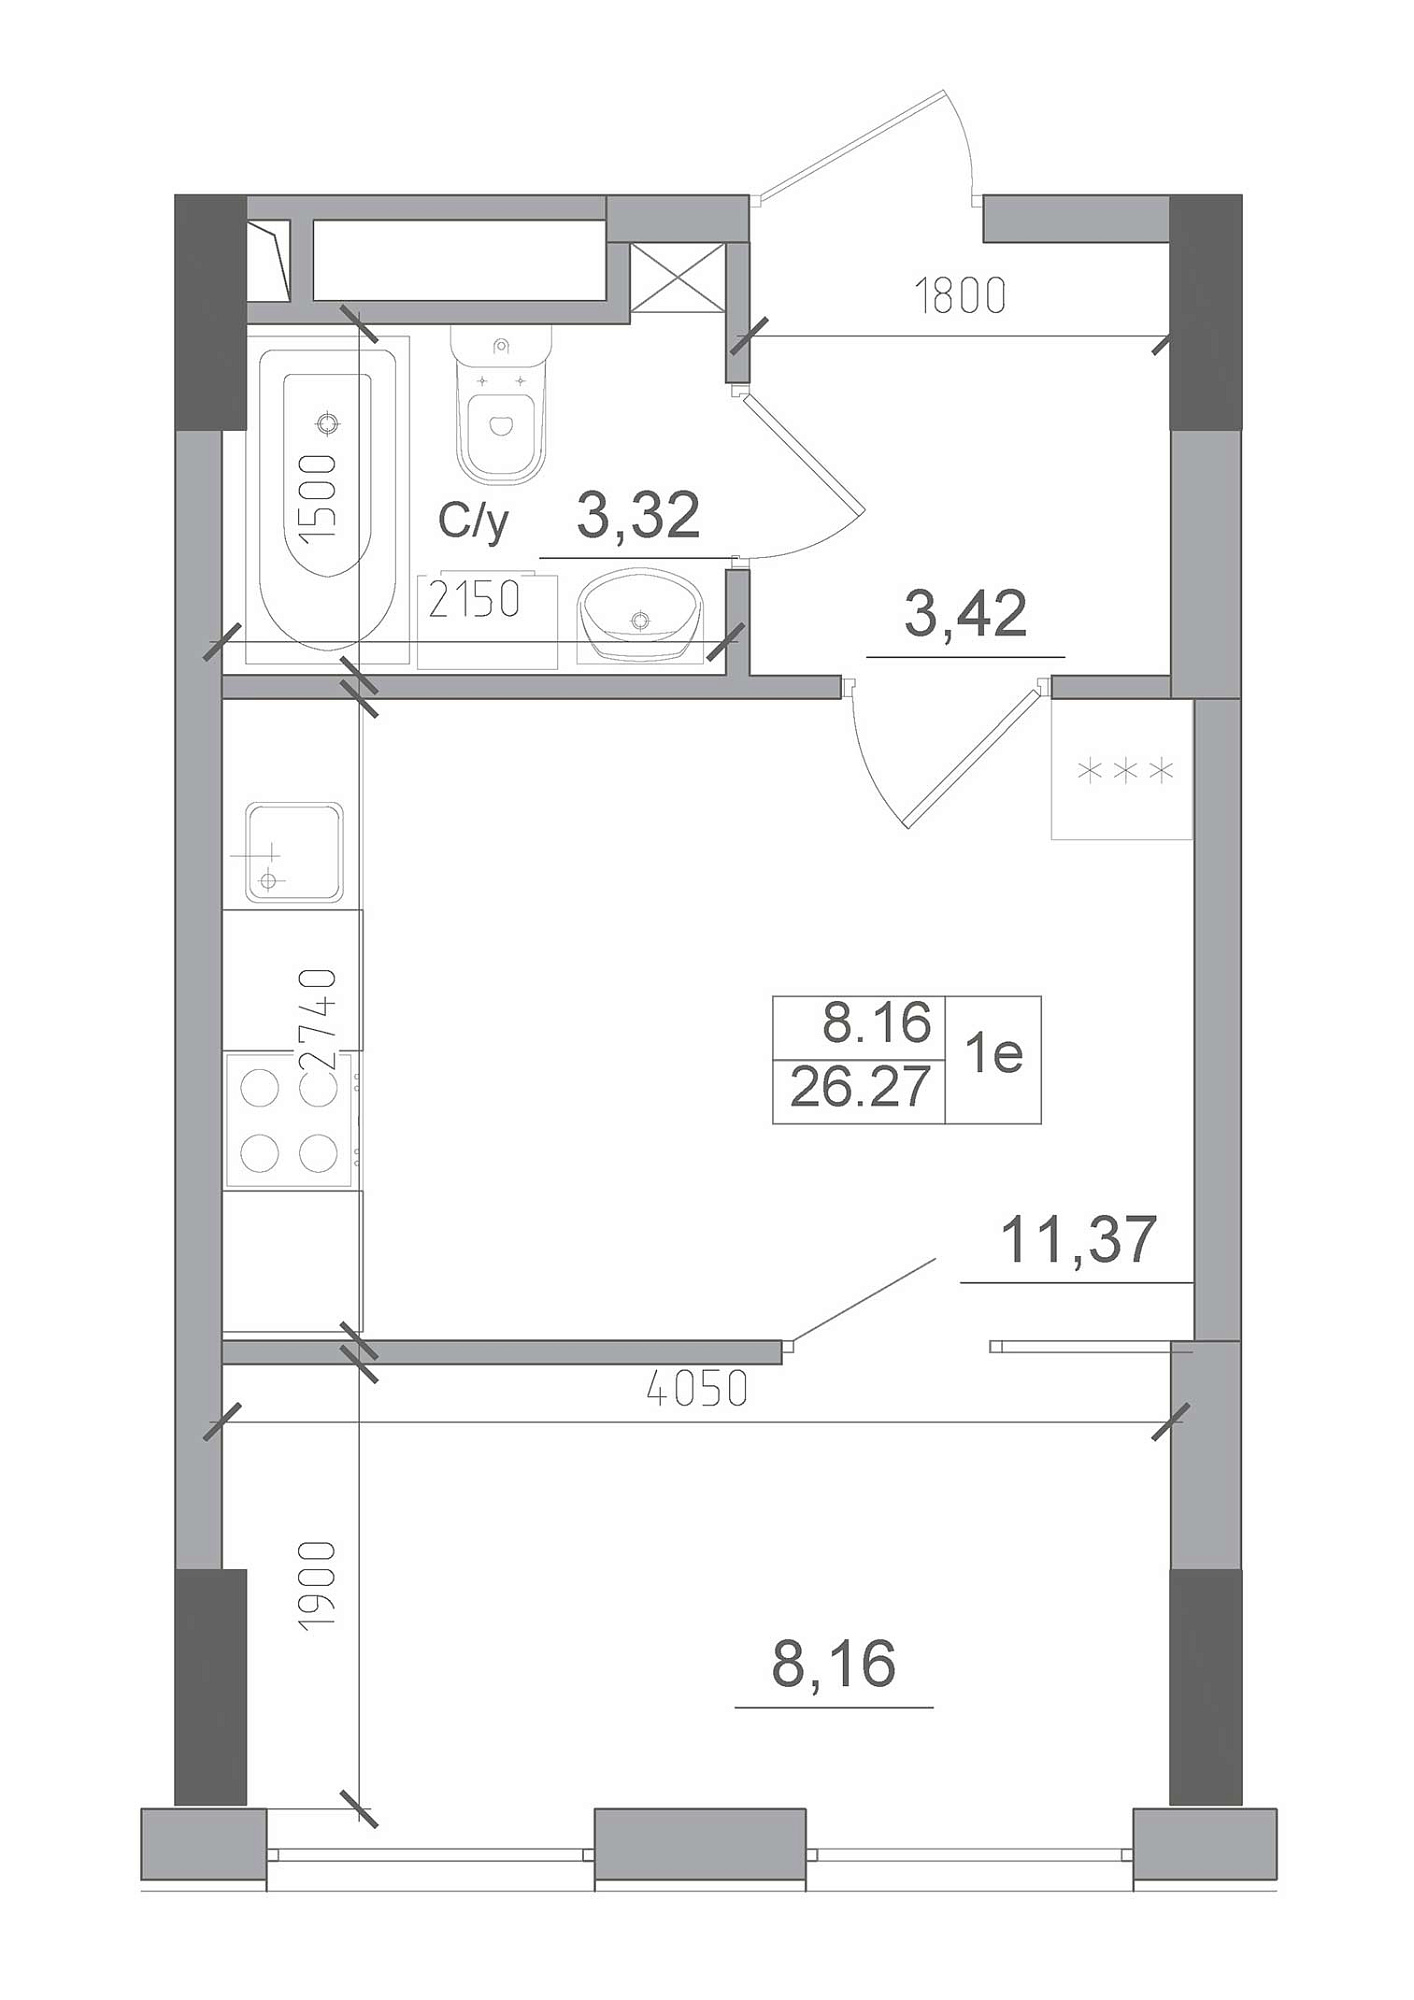 Планування 1-к квартира площею 26.27м2, AB-22-06/00009.